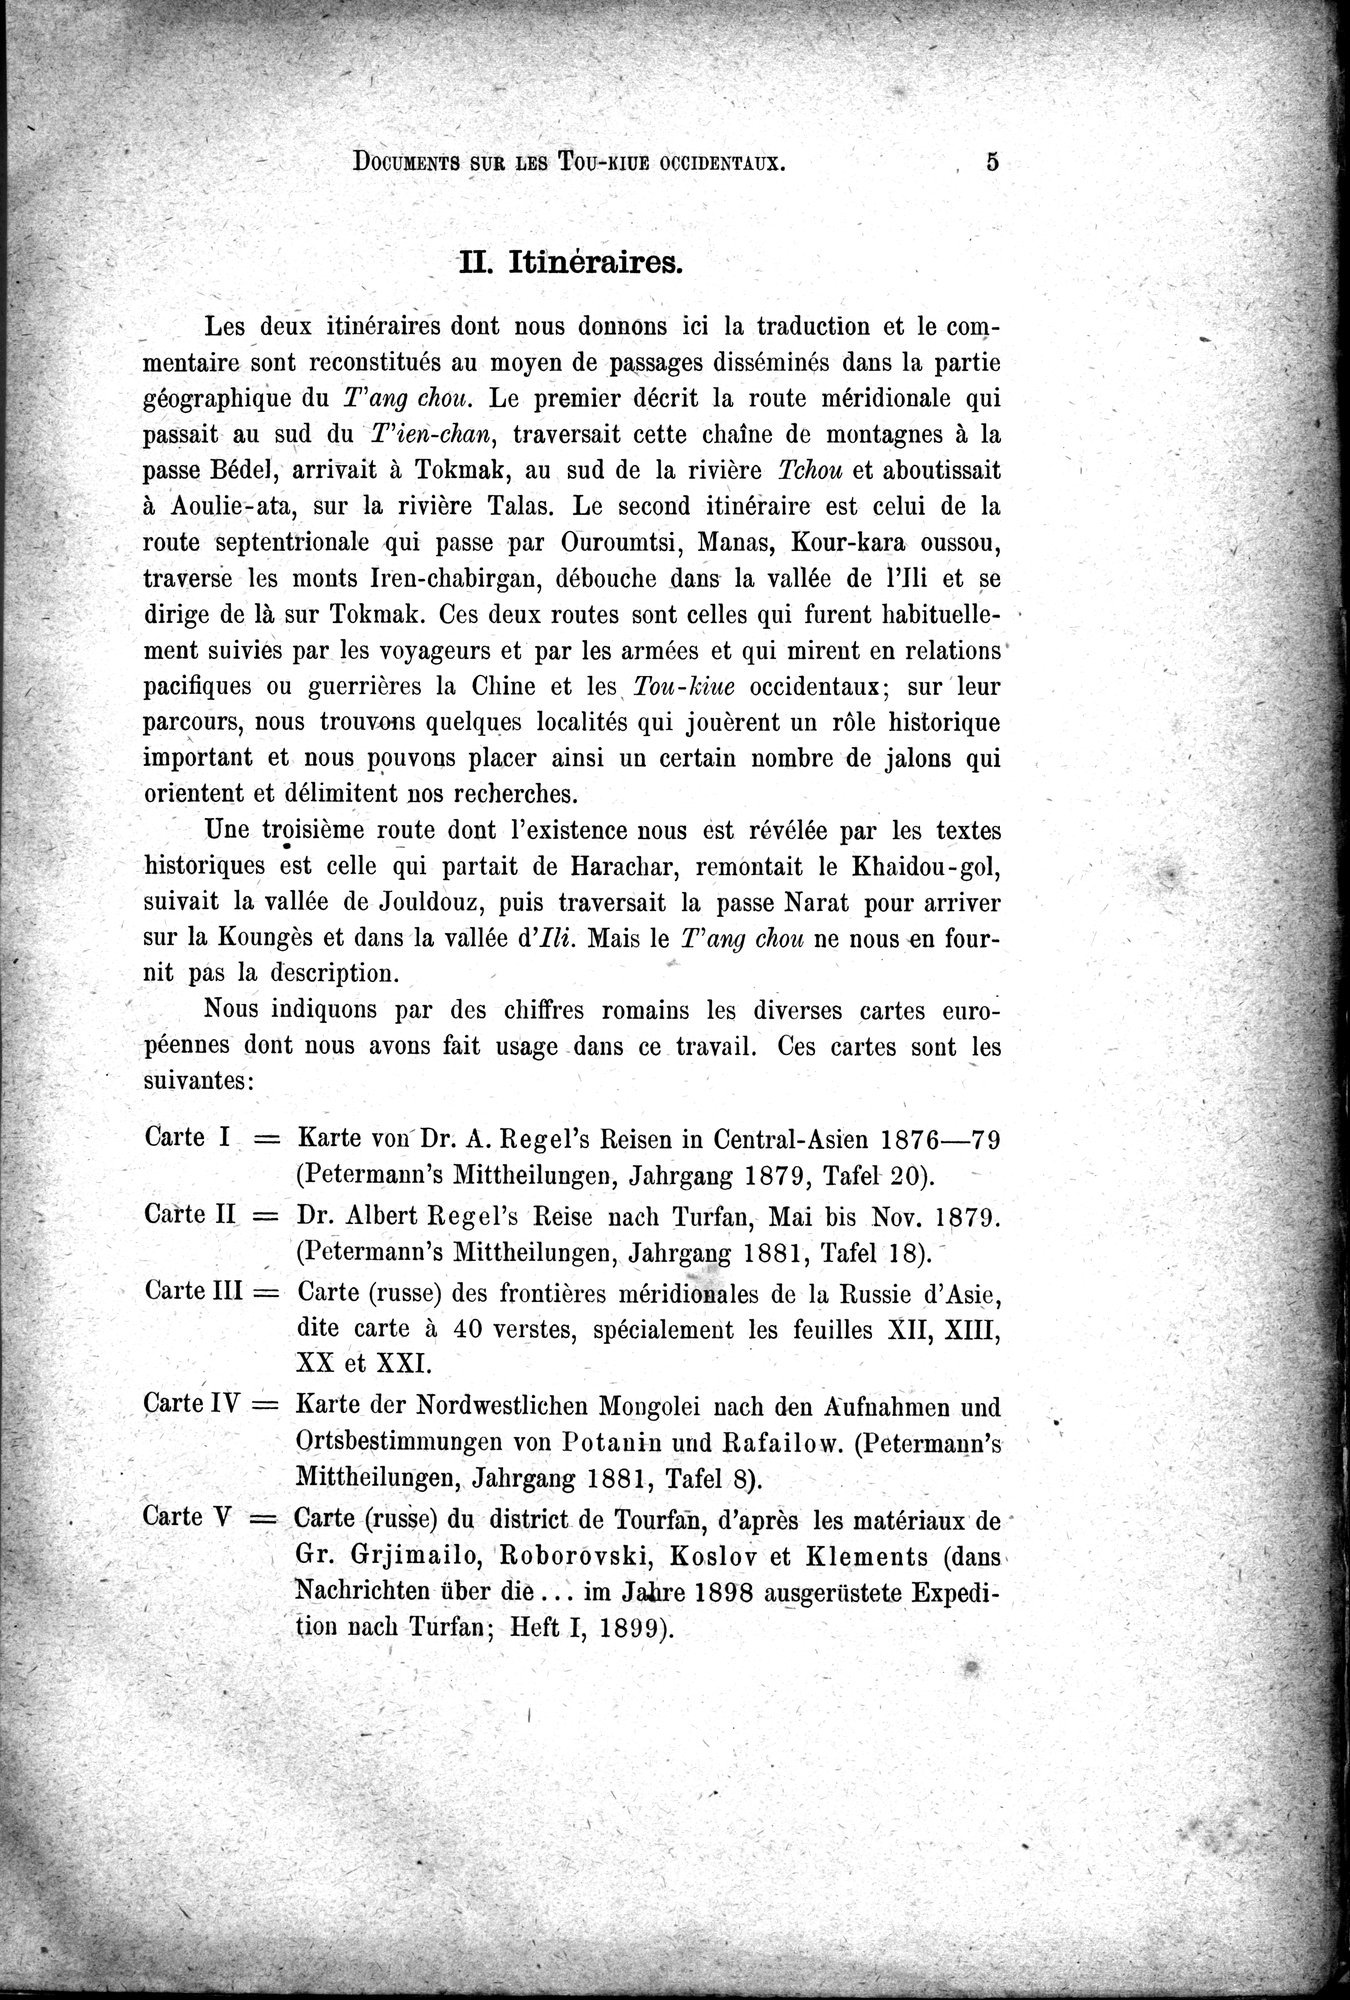 Documents sur les Tou-kiue (Turcs) occidentaux : vol.1 / Page 15 (Grayscale High Resolution Image)